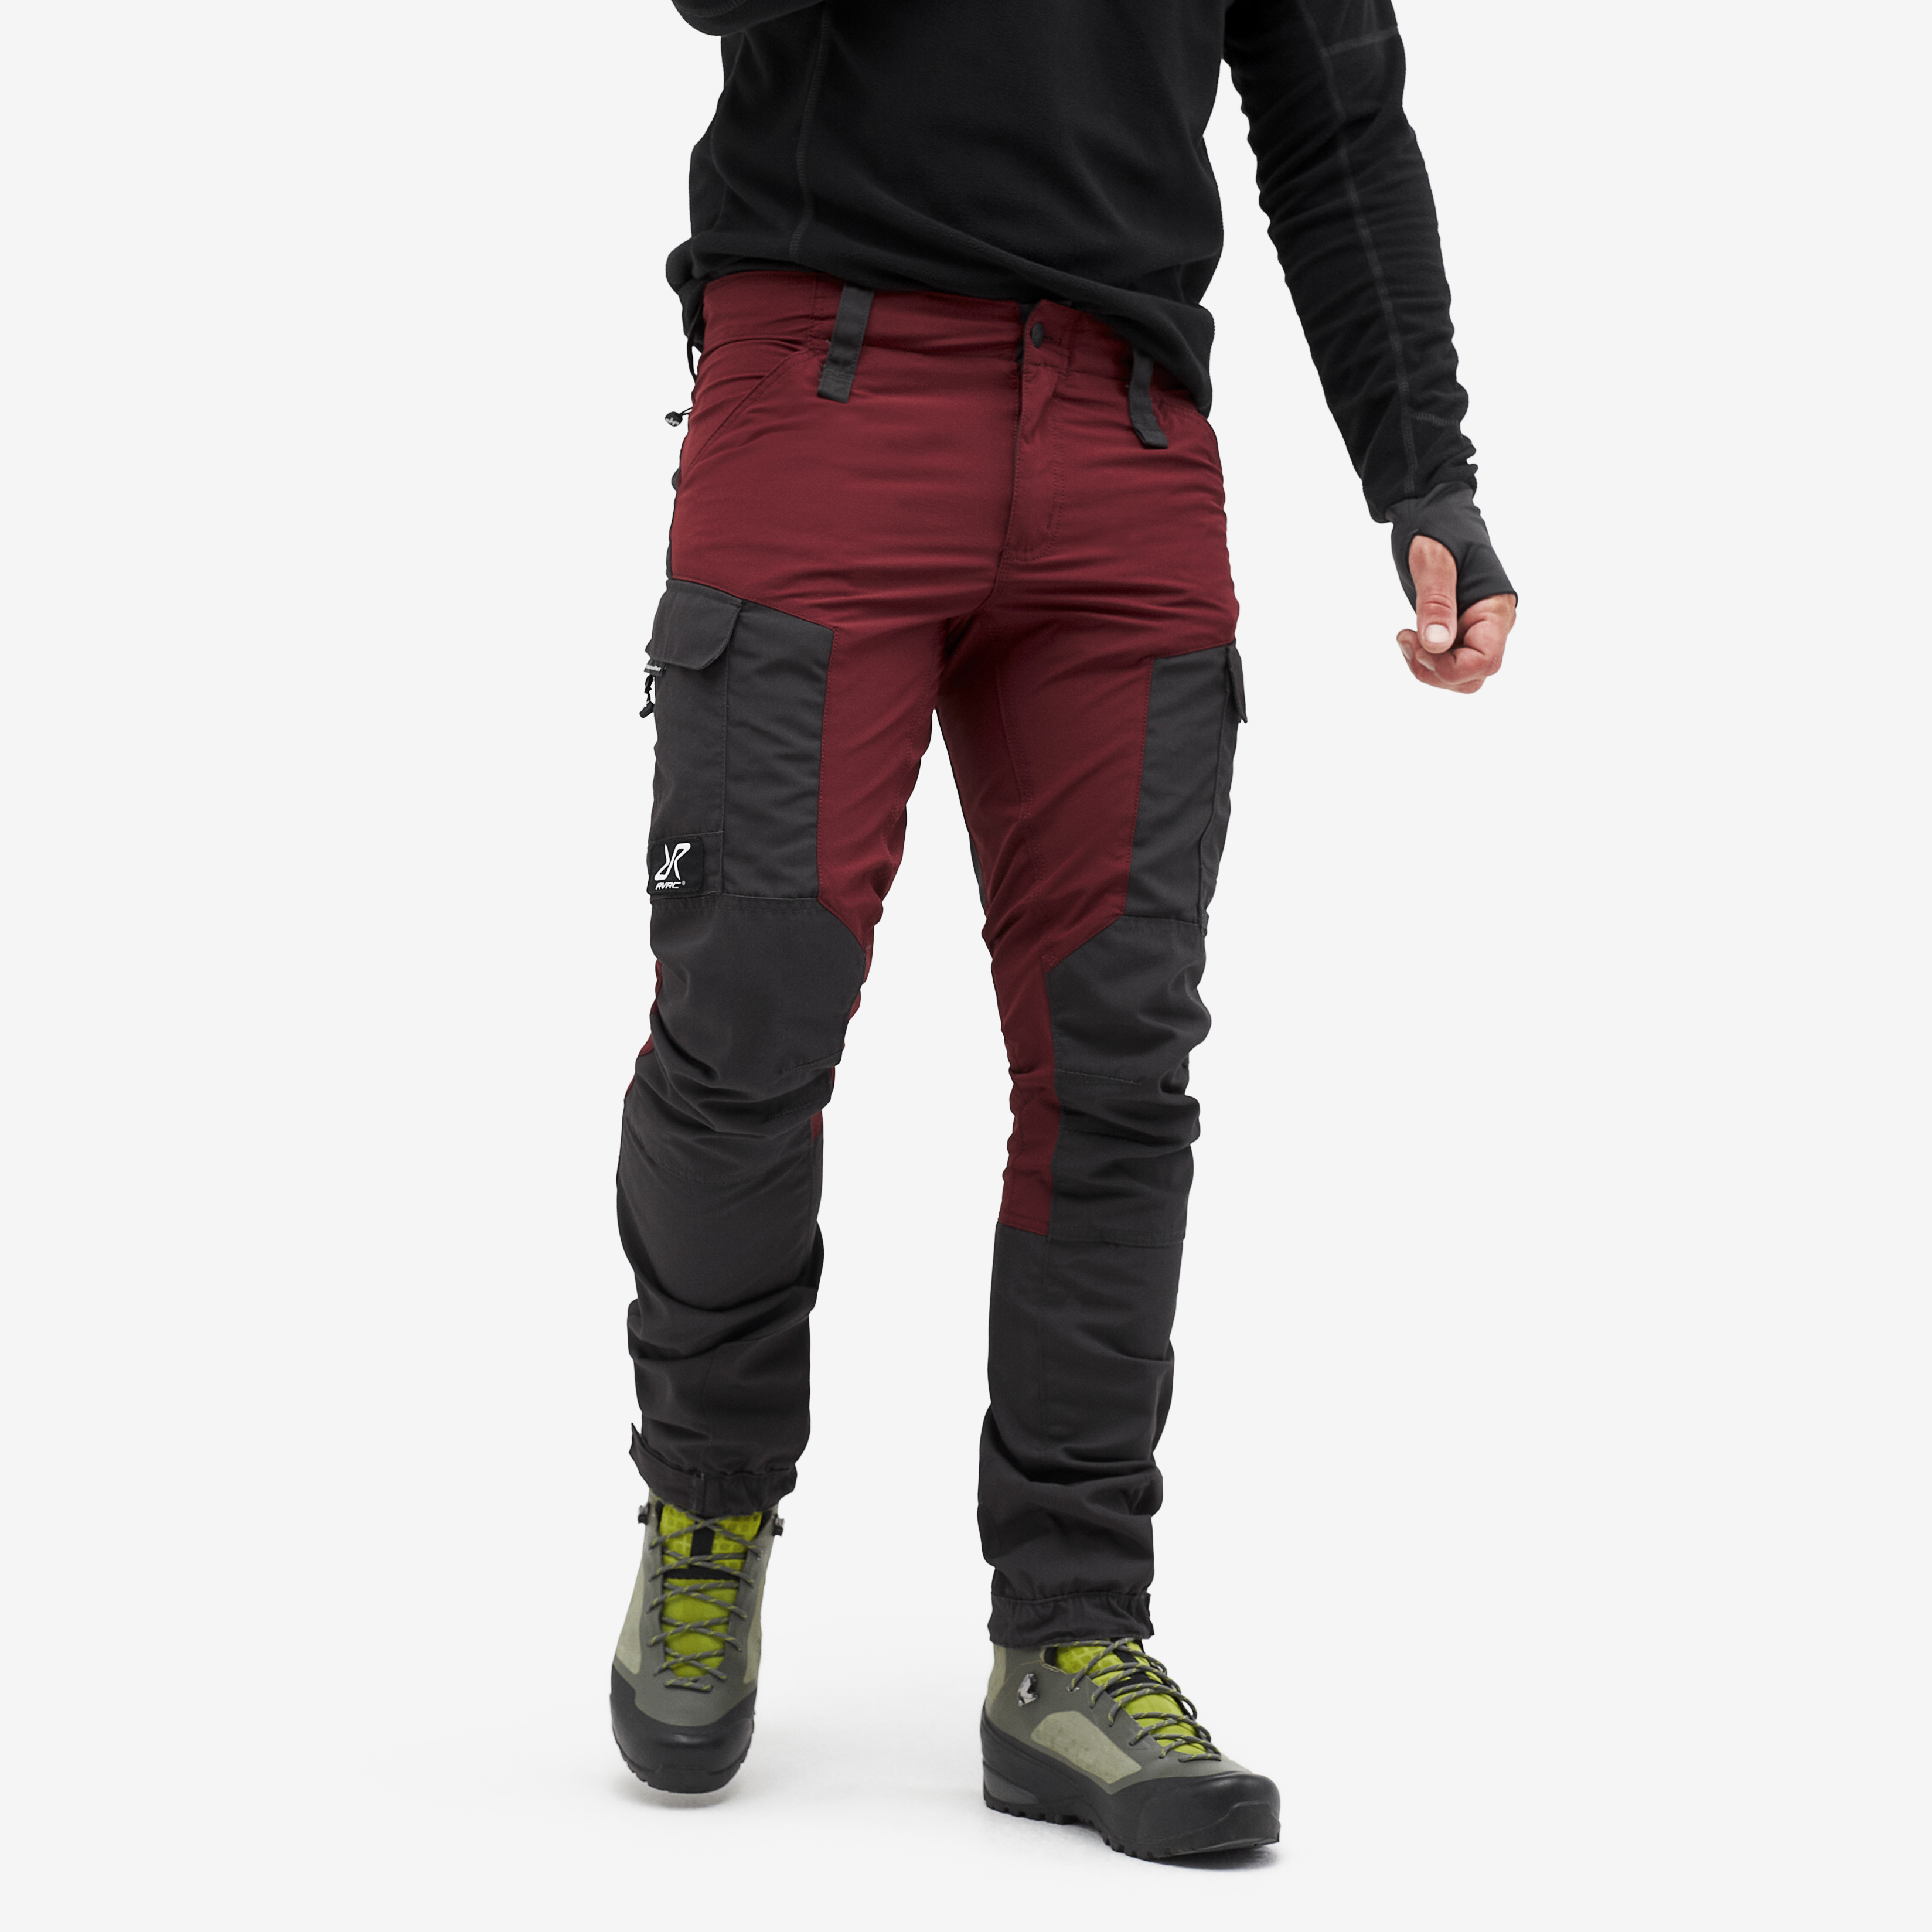 RVRC GP spodnie outdoorowe męskie bordowe